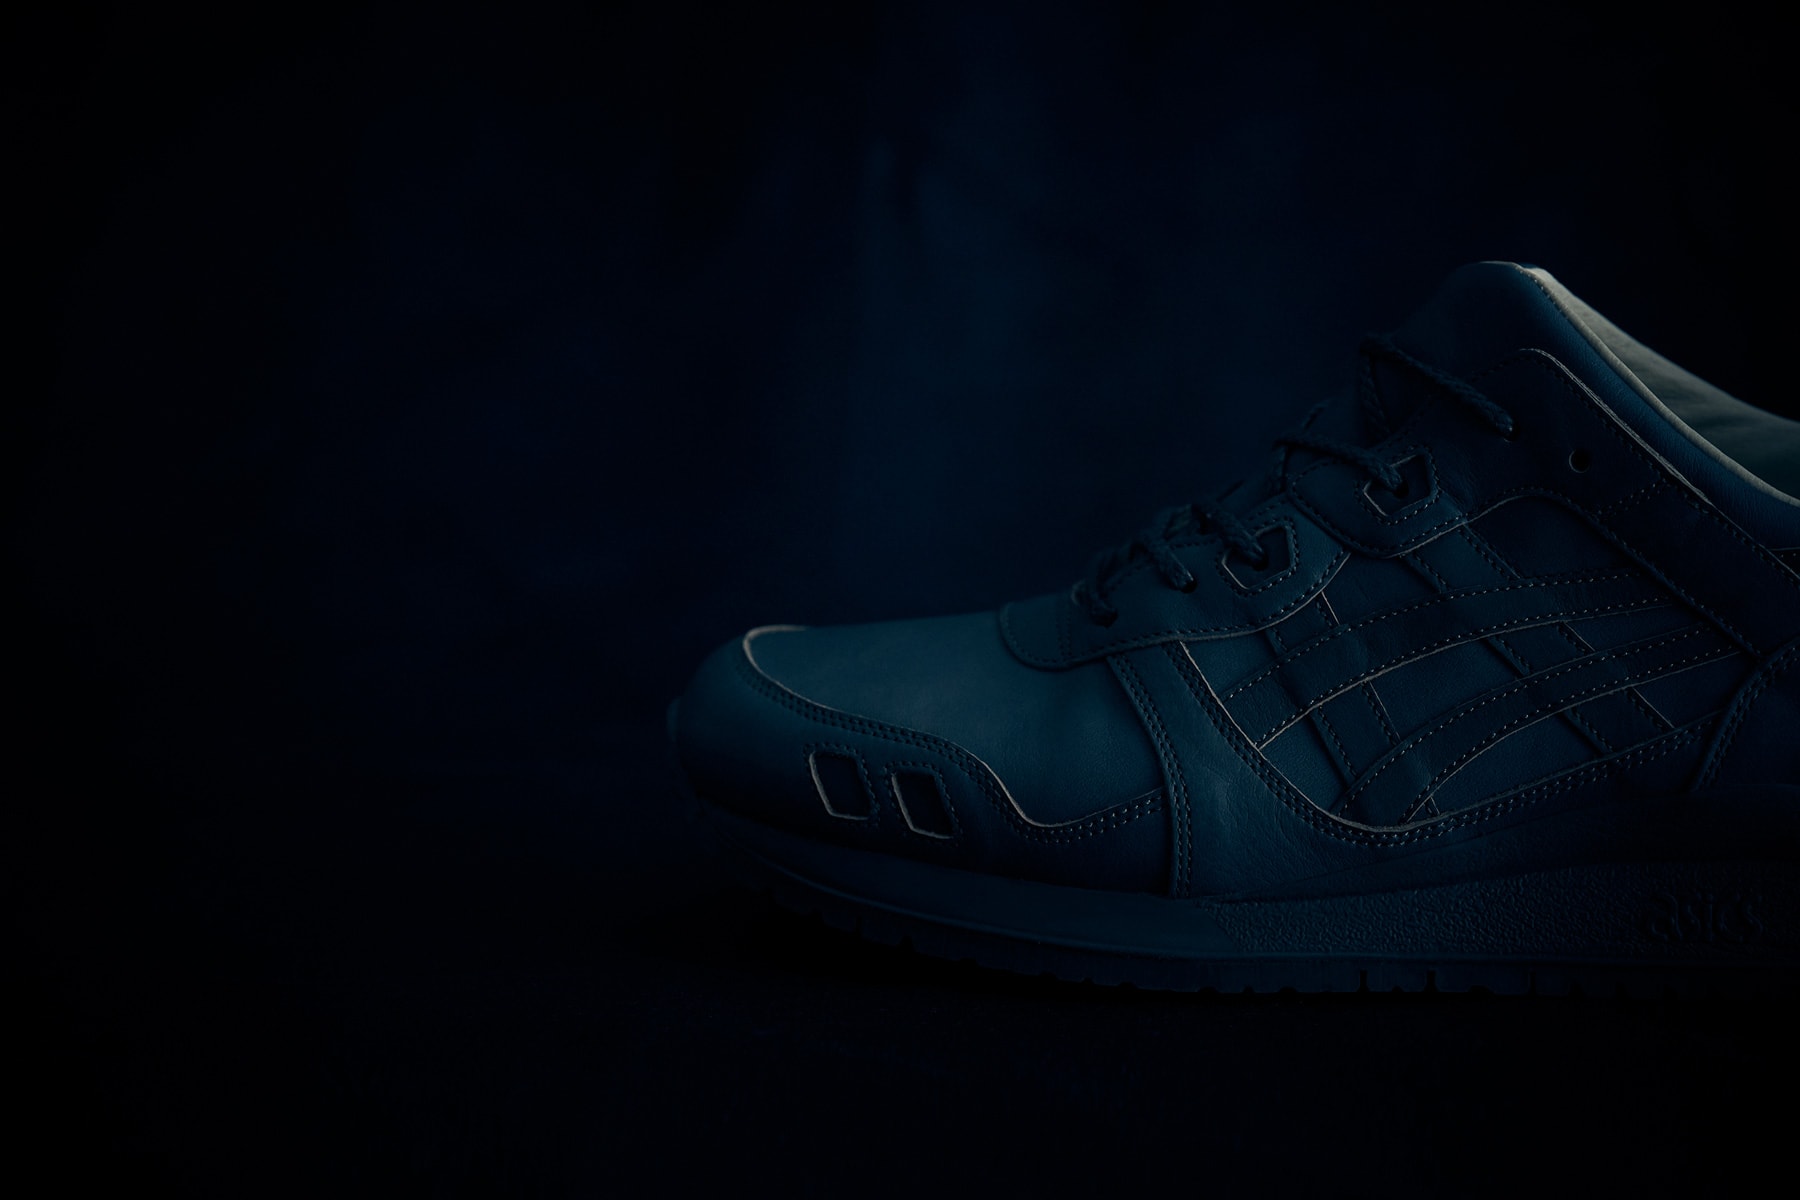 ASICS TIGER Made in Japan GEL Lyte III Indigo handmade 2017 December 9 Dark Light Shoe Sneaker Release Date Drop Info blue dye 